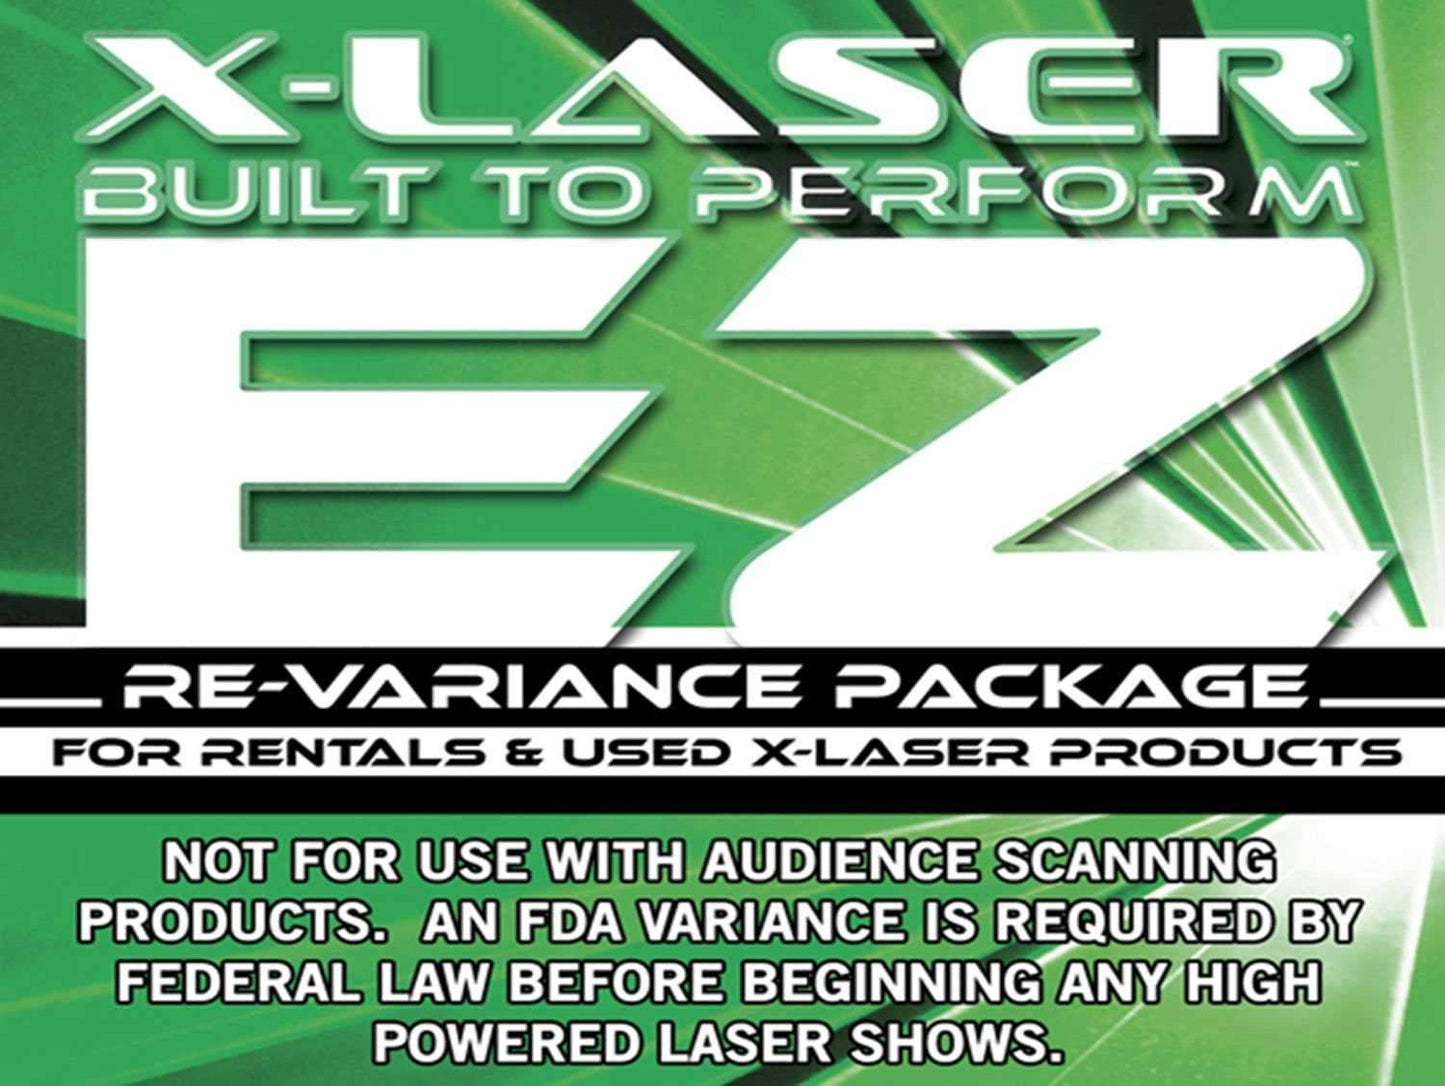 X-Laser EZ Online Laser Variance Application Kit - ProSound and Stage Lighting